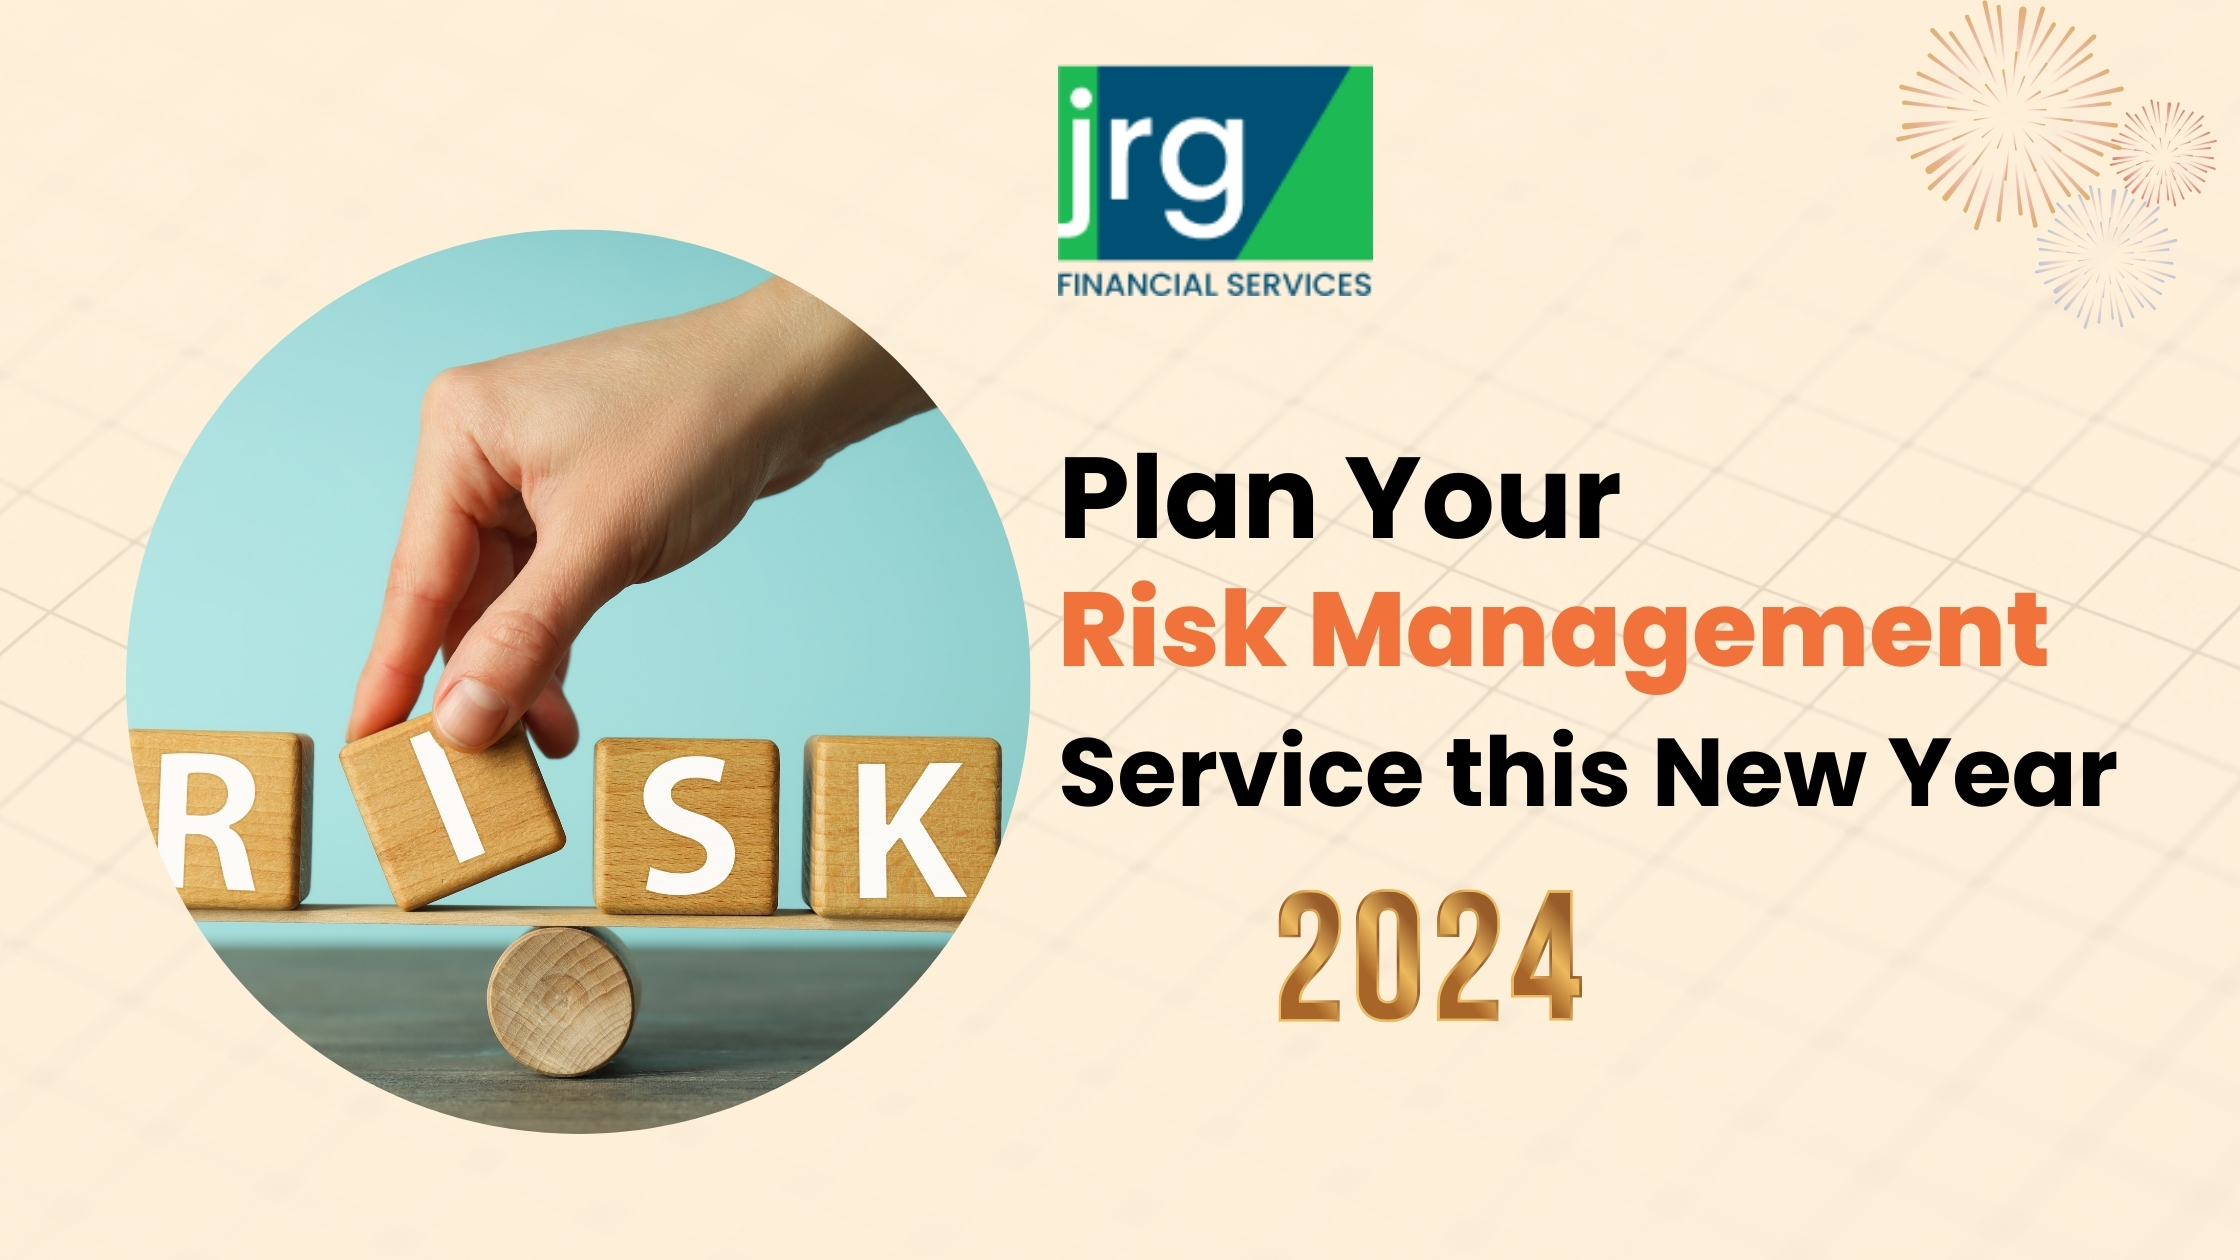 risk management service